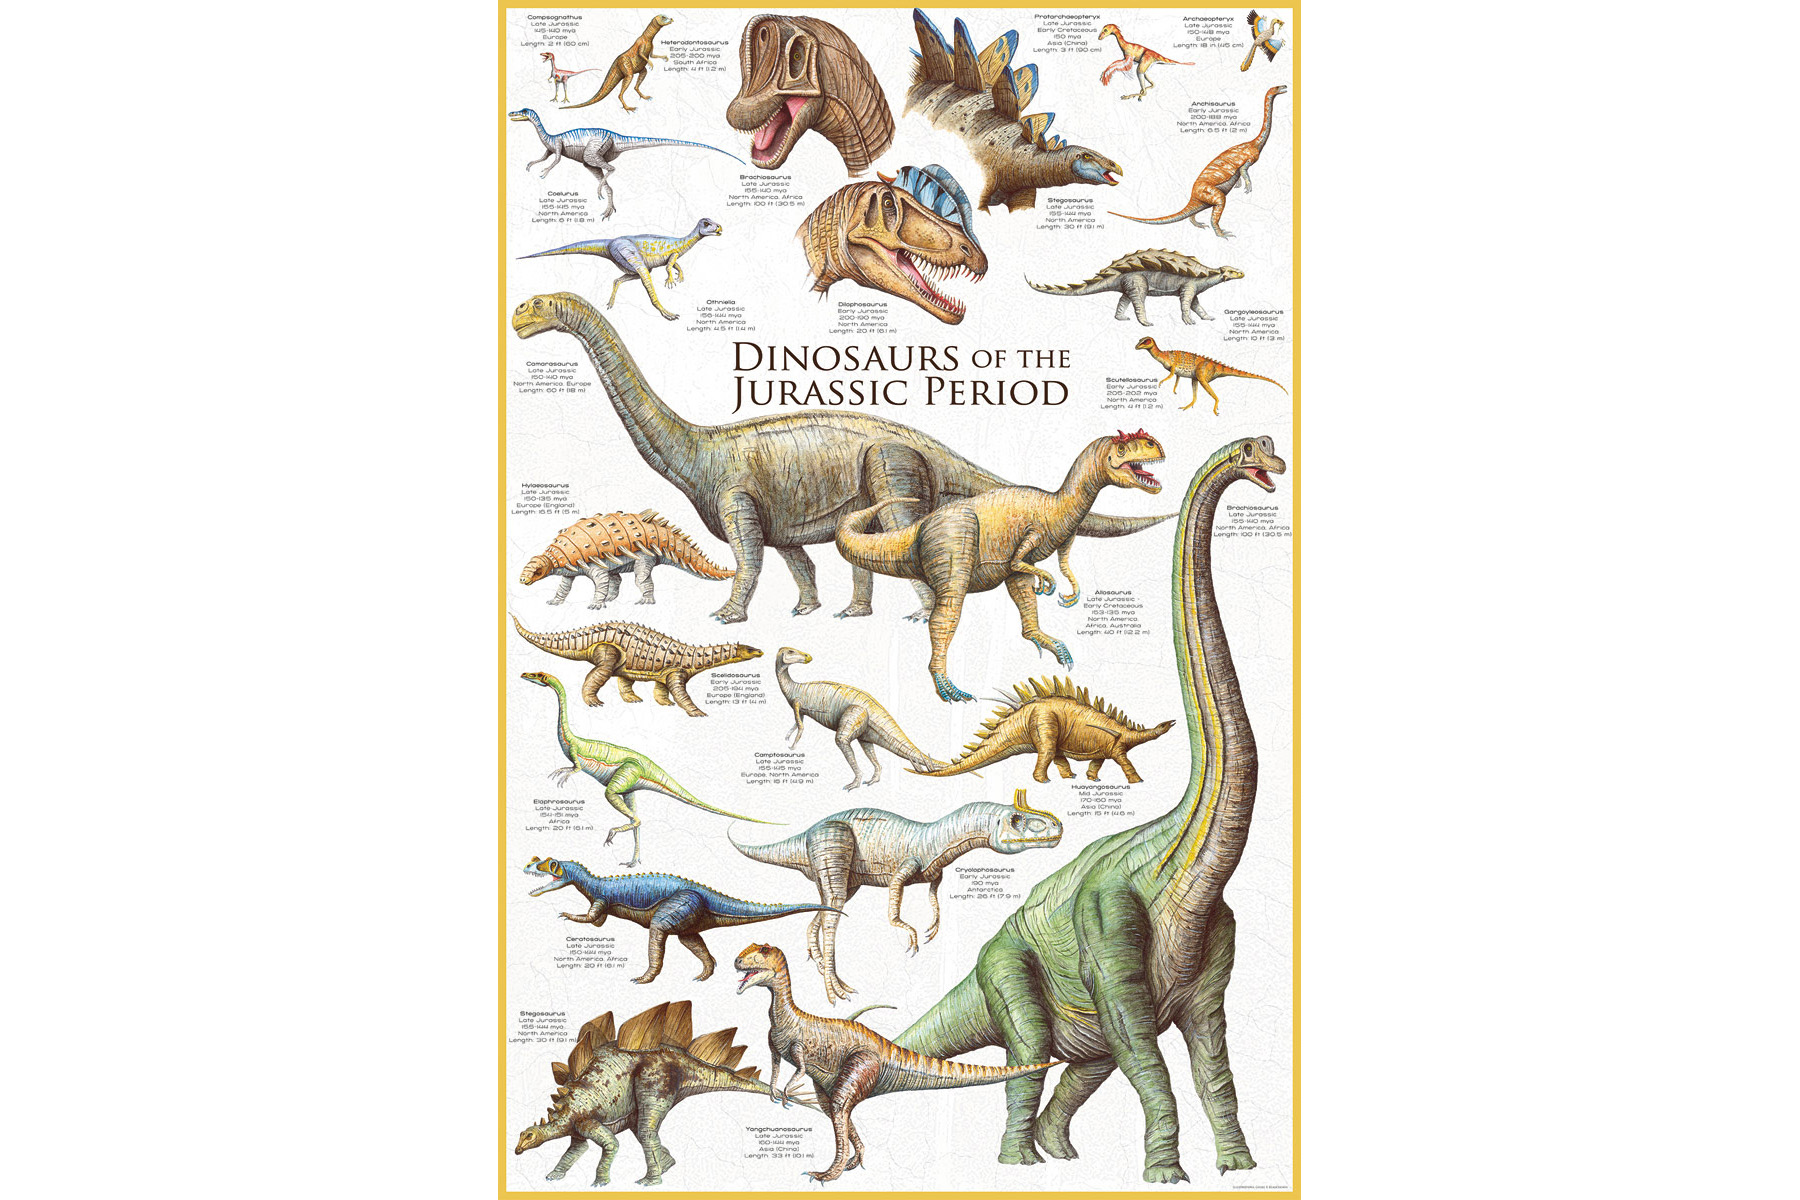 1000 Teile Puzzle - Dinosaurier Jura Zeit der